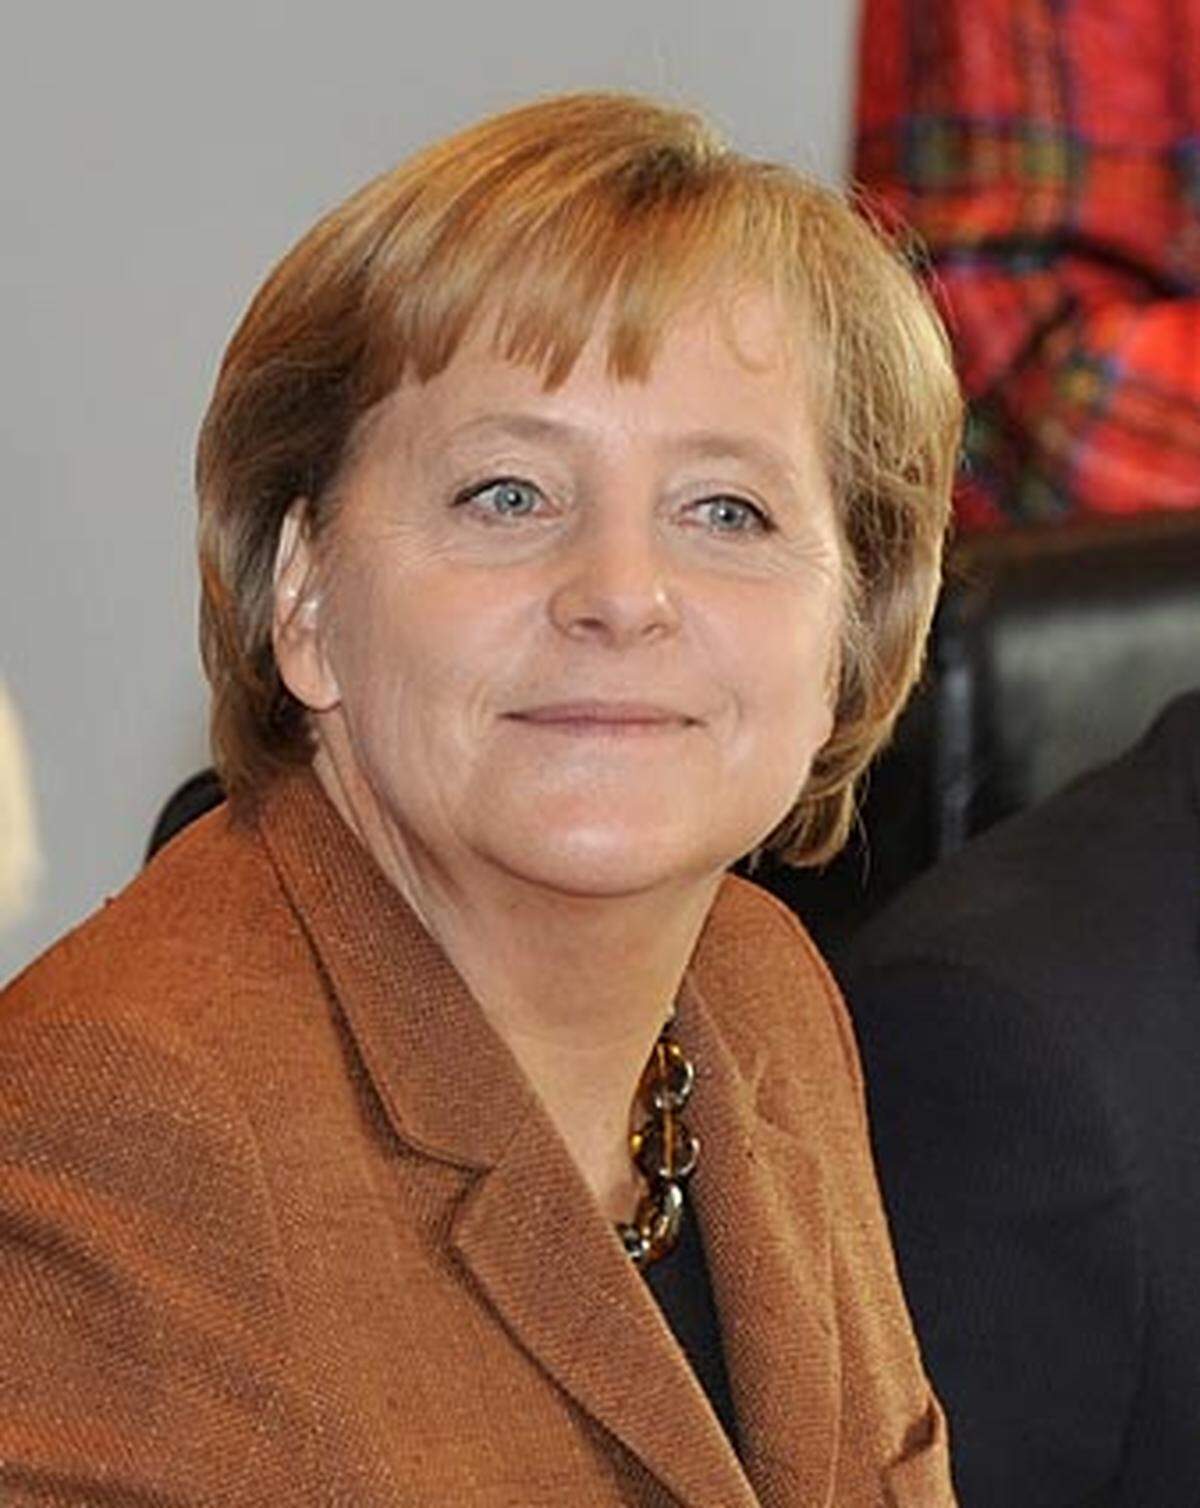 Die deutsche Bundeskanzlerin Angela Merkel hat es als "wunderbares Signal" bezeichnet, dass 20 Jahre nach dem Mauerfall die Müller mit dem Nobelpreis ausgezeichnet wird. Mit Blick auf Müllers Herkunft aus Rumänien sagte Merkel am, das "hervorragende" Werk der Literatin sei aus einer Lebenserfahrung gespeist, "die von Diktatur, Unterdrückung, von Ängsten, aber auch von unglaublichem Mut spricht". Die Kanzlerin fügte hinzu: "Wir freuen uns, dass sie eine Heimat in Deutschland gefunden hat, und ich gratuliere ihr von ganzem Herzen."